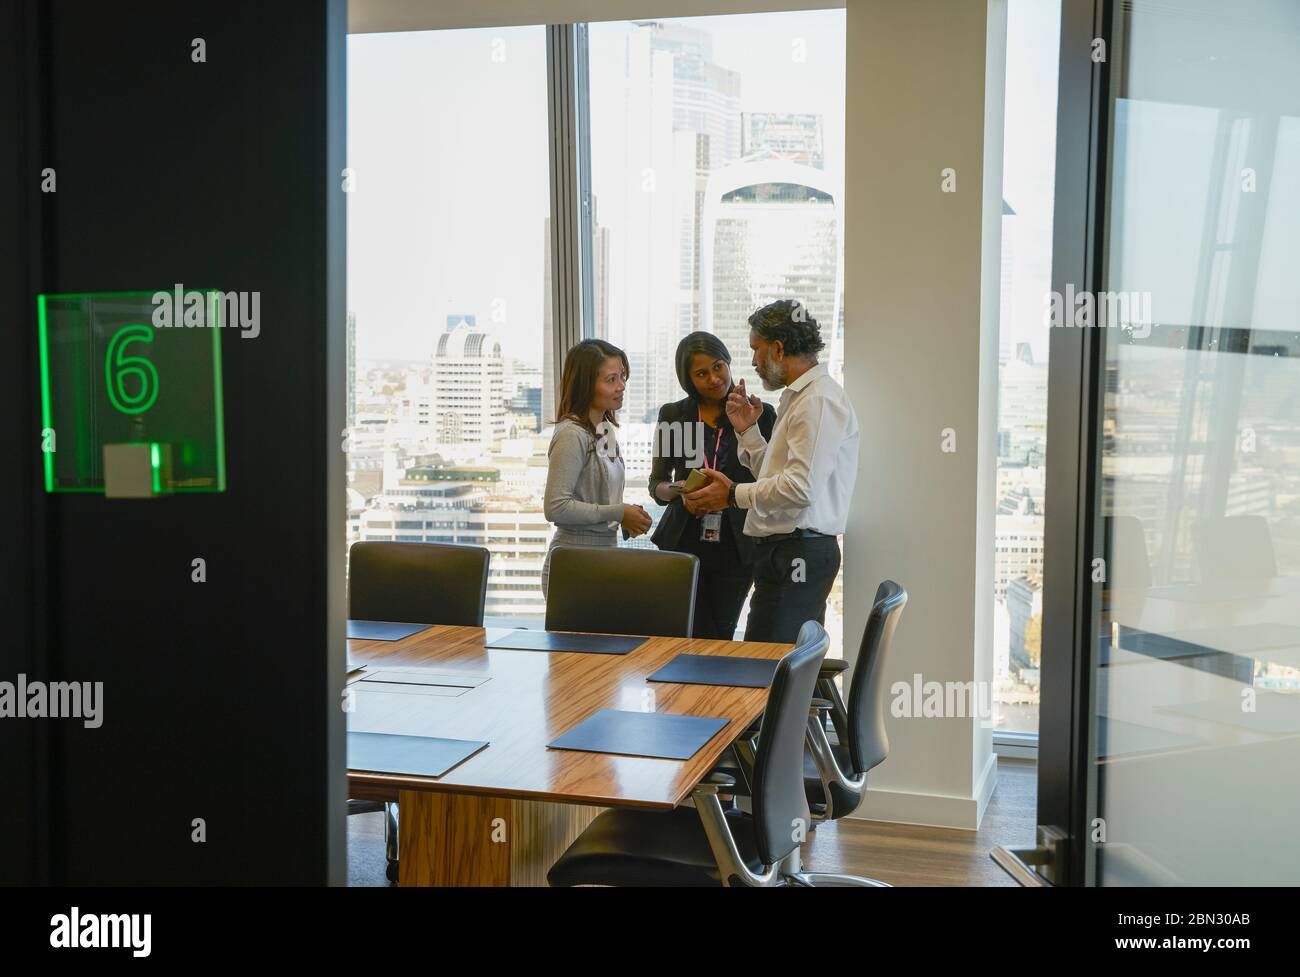 Les personnes en voyage d'affaires parlent dans une salle de conférence moderne Banque D'Images